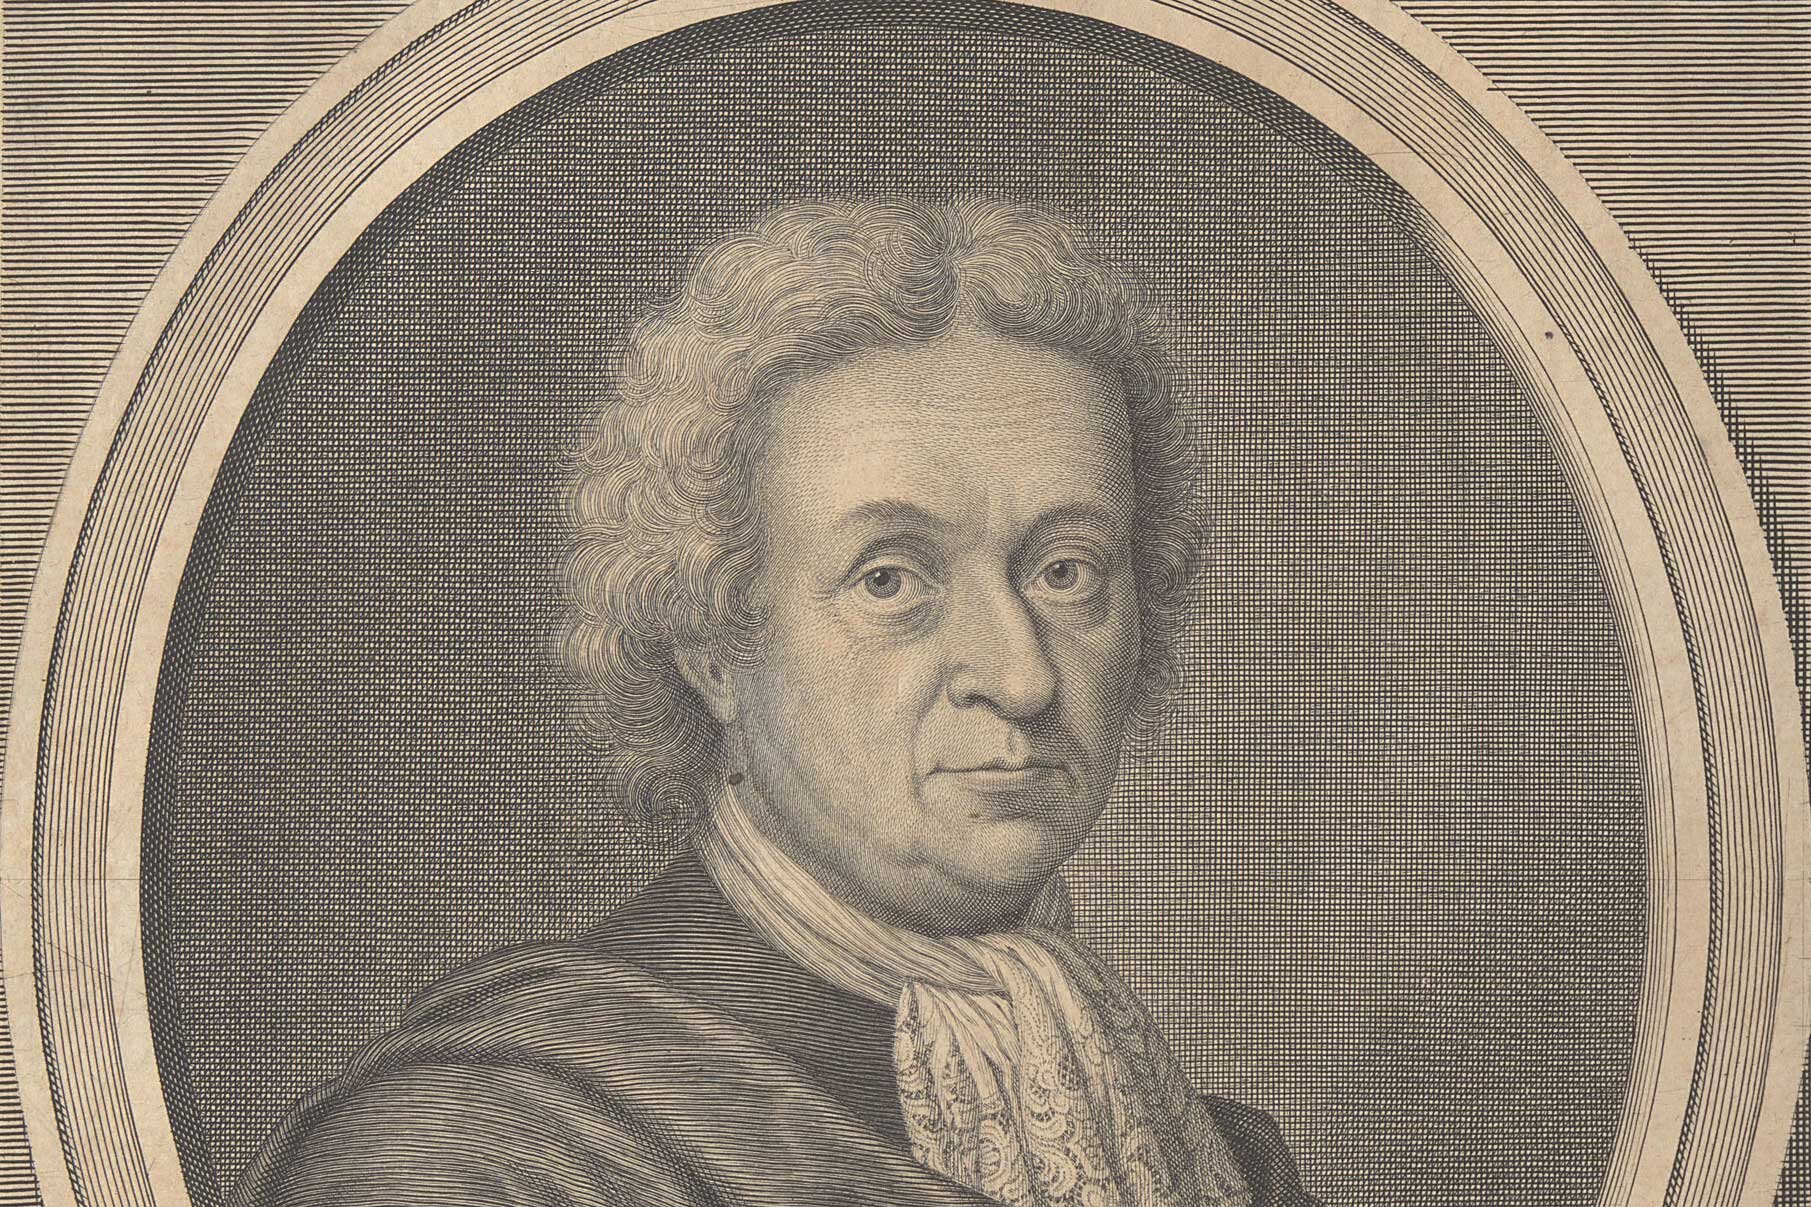 Erschließung der Korrespondenz und der Lebenszeugnisse Veit Ludwig von Seckendorffs (1626-1692)